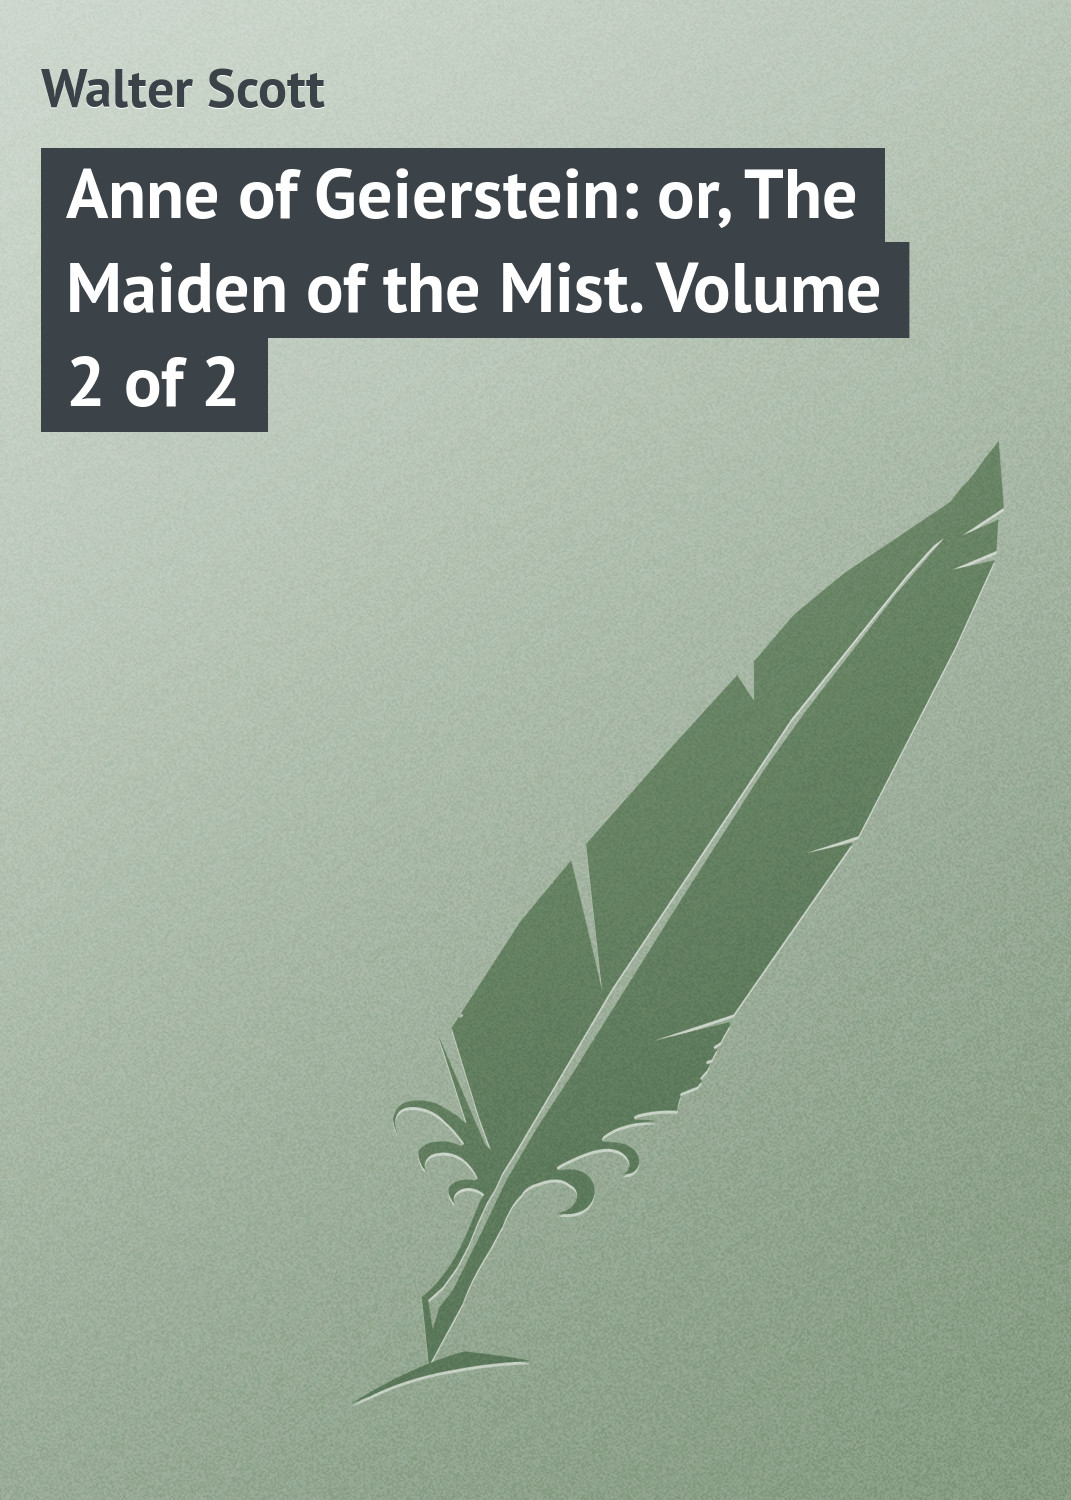 Книга Anne of Geierstein: or, The Maiden of the Mist. Volume 2 of 2 из серии , созданная Walter Scott, может относится к жанру Зарубежная классика. Стоимость электронной книги Anne of Geierstein: or, The Maiden of the Mist. Volume 2 of 2 с идентификатором 23147811 составляет 5.99 руб.